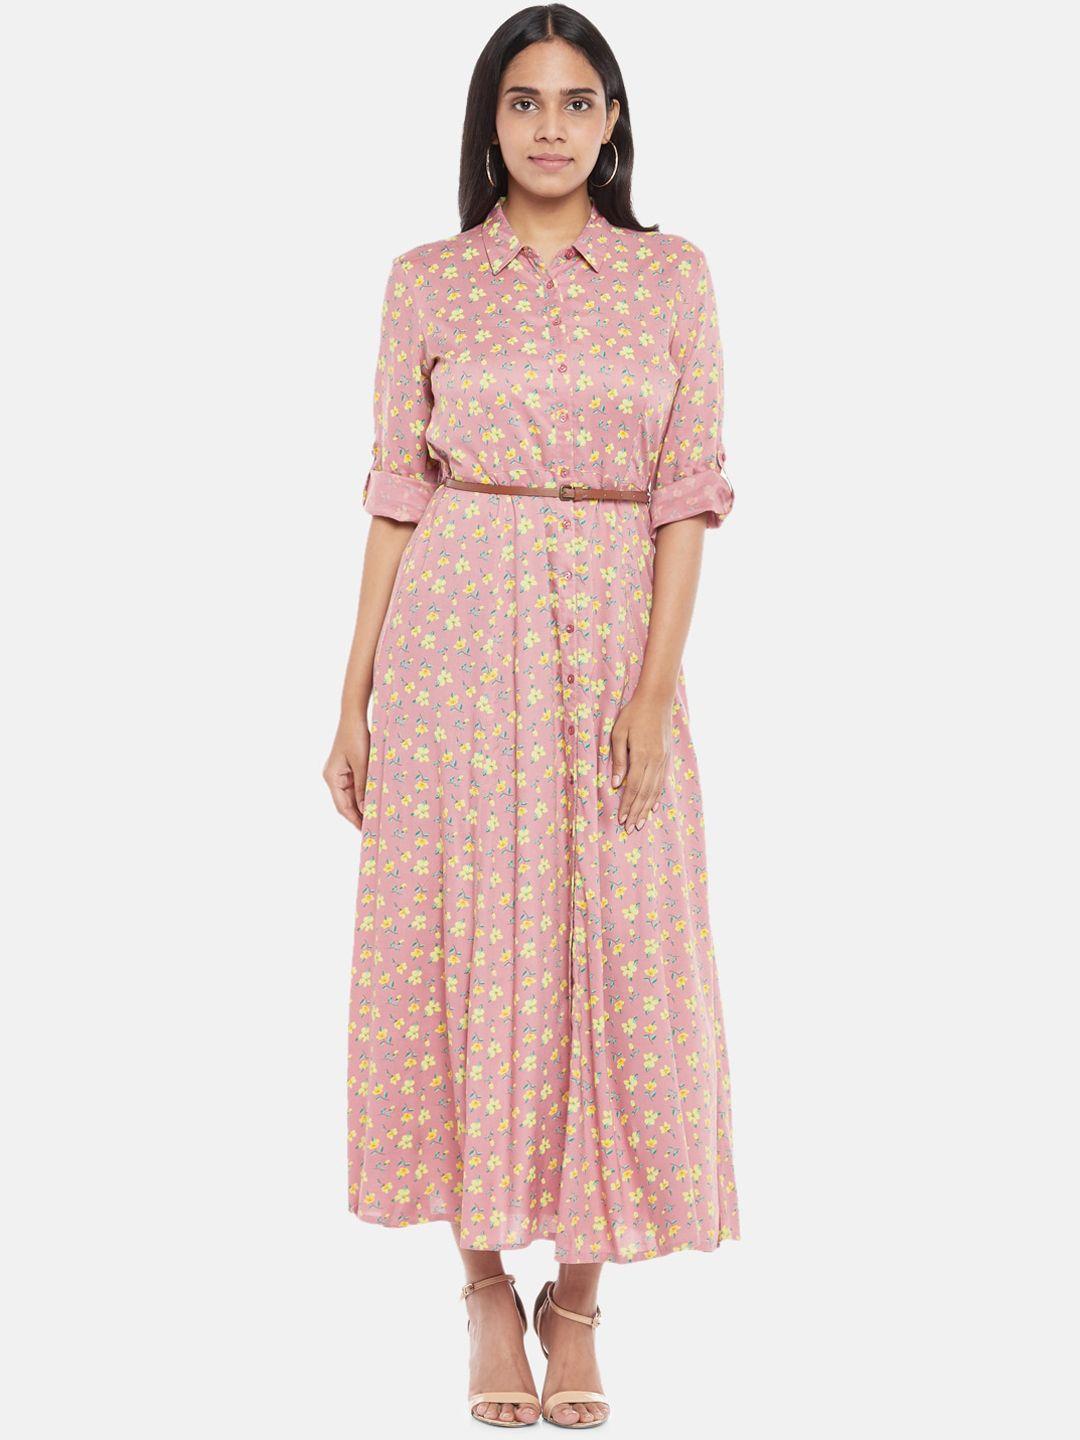 honey by pantaloons pink & yellow floral shirt midi dress